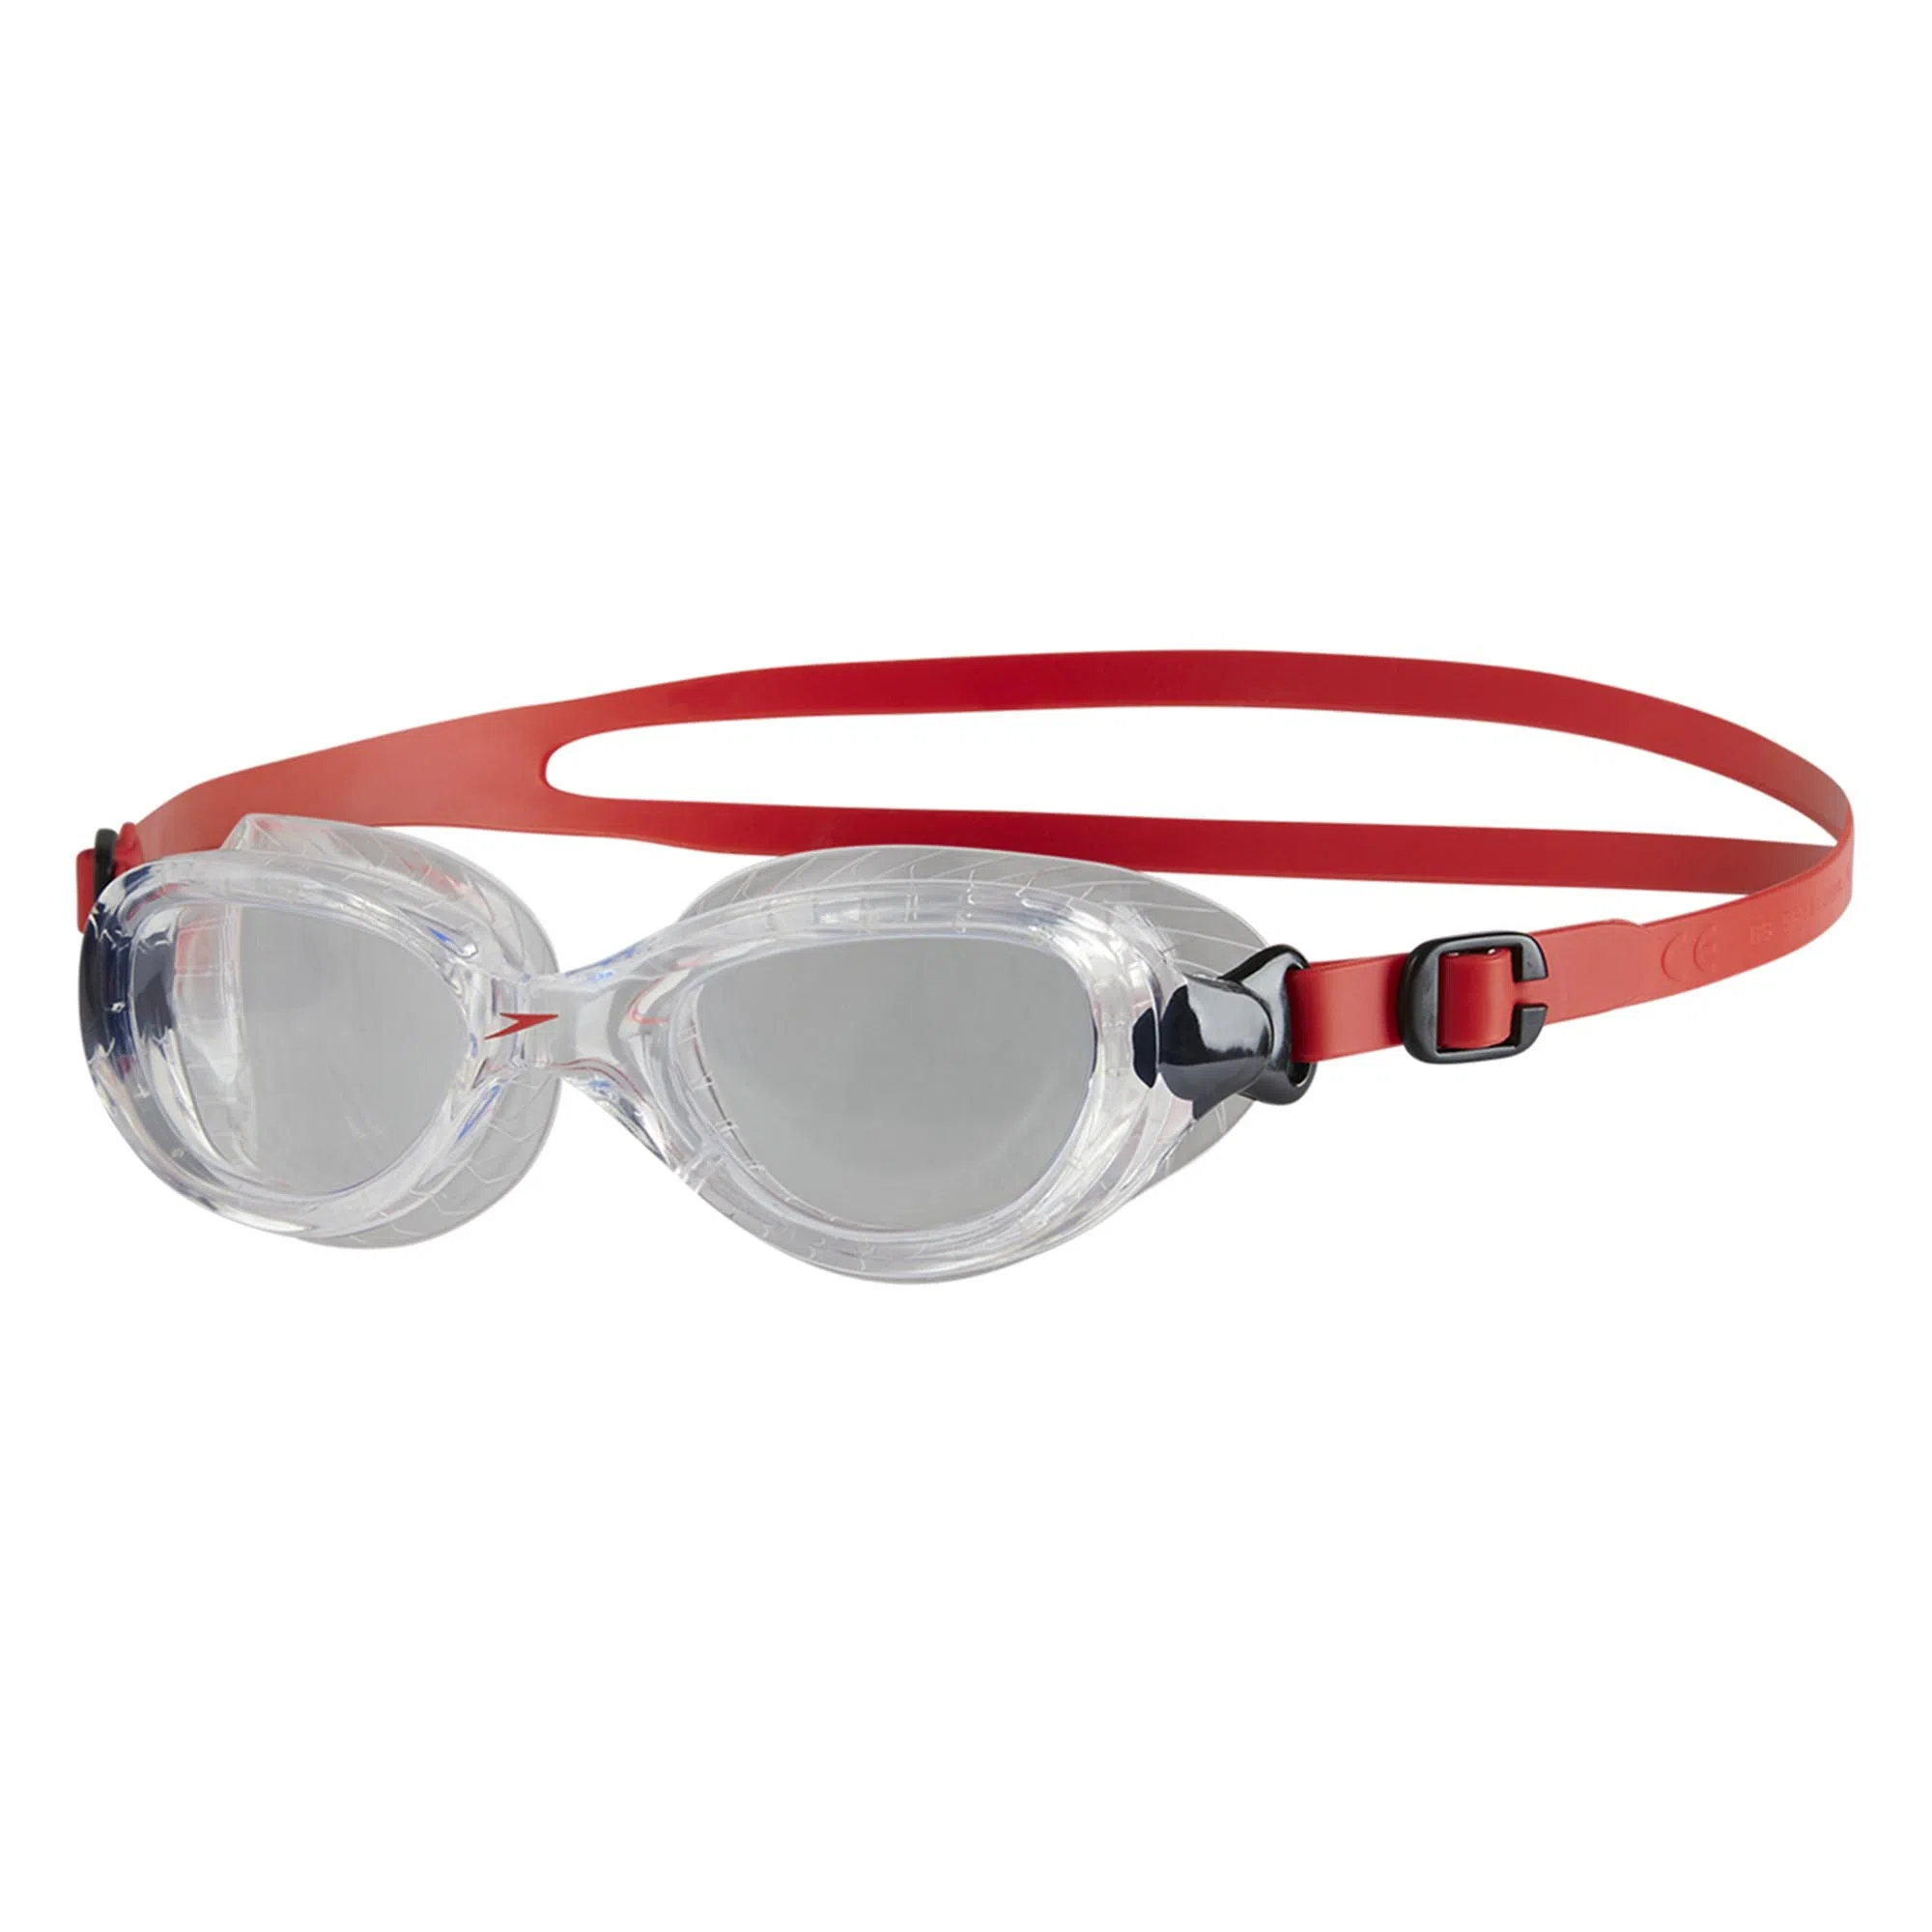 Gafas De Natación Hydropure Mirror Black/Silver Speedo - Mundo Deportivo